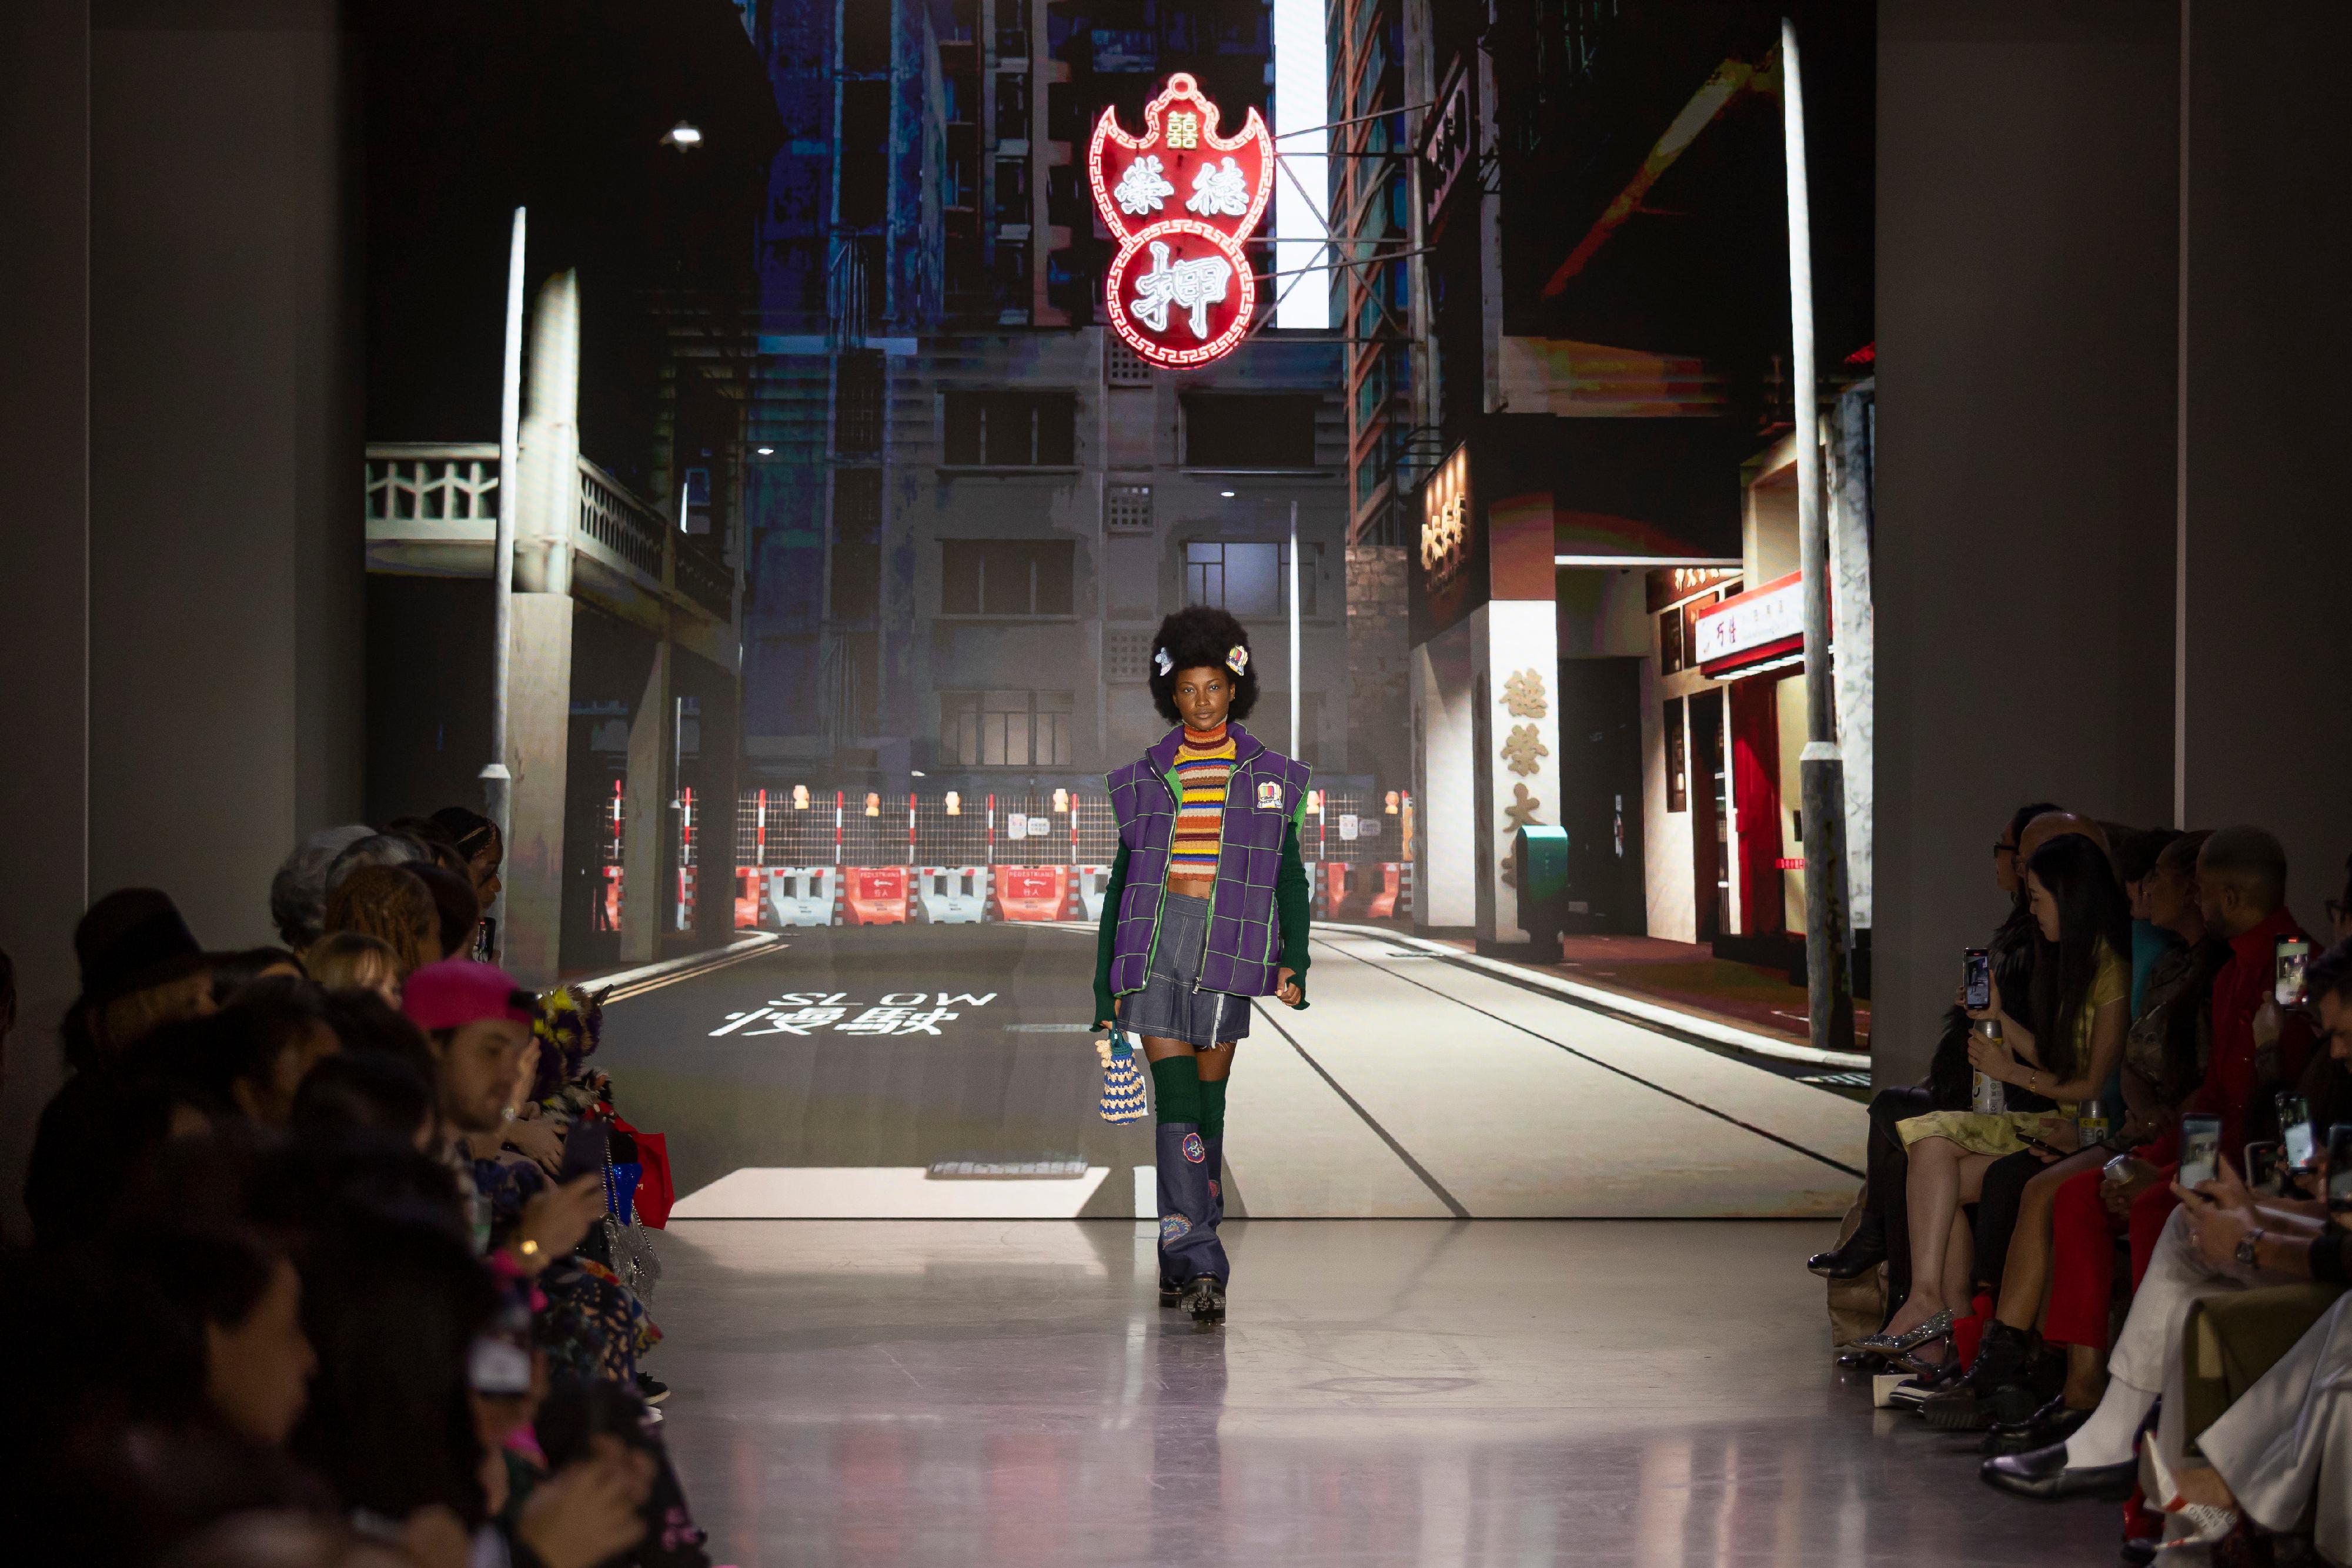 世界知名香港设计师Vivienne Tam二月十二日（纽约时间）在数码港和香港驻纽约经济贸易办事处支持下，与Animoca Brands和Hepha合作为其纽约时装周的时装秀打造香港元宇宙，展示香港独特的街景和标志，包括香港电车、传奇的海鲜舫、夺目的霓虹灯招牌、当铺等。